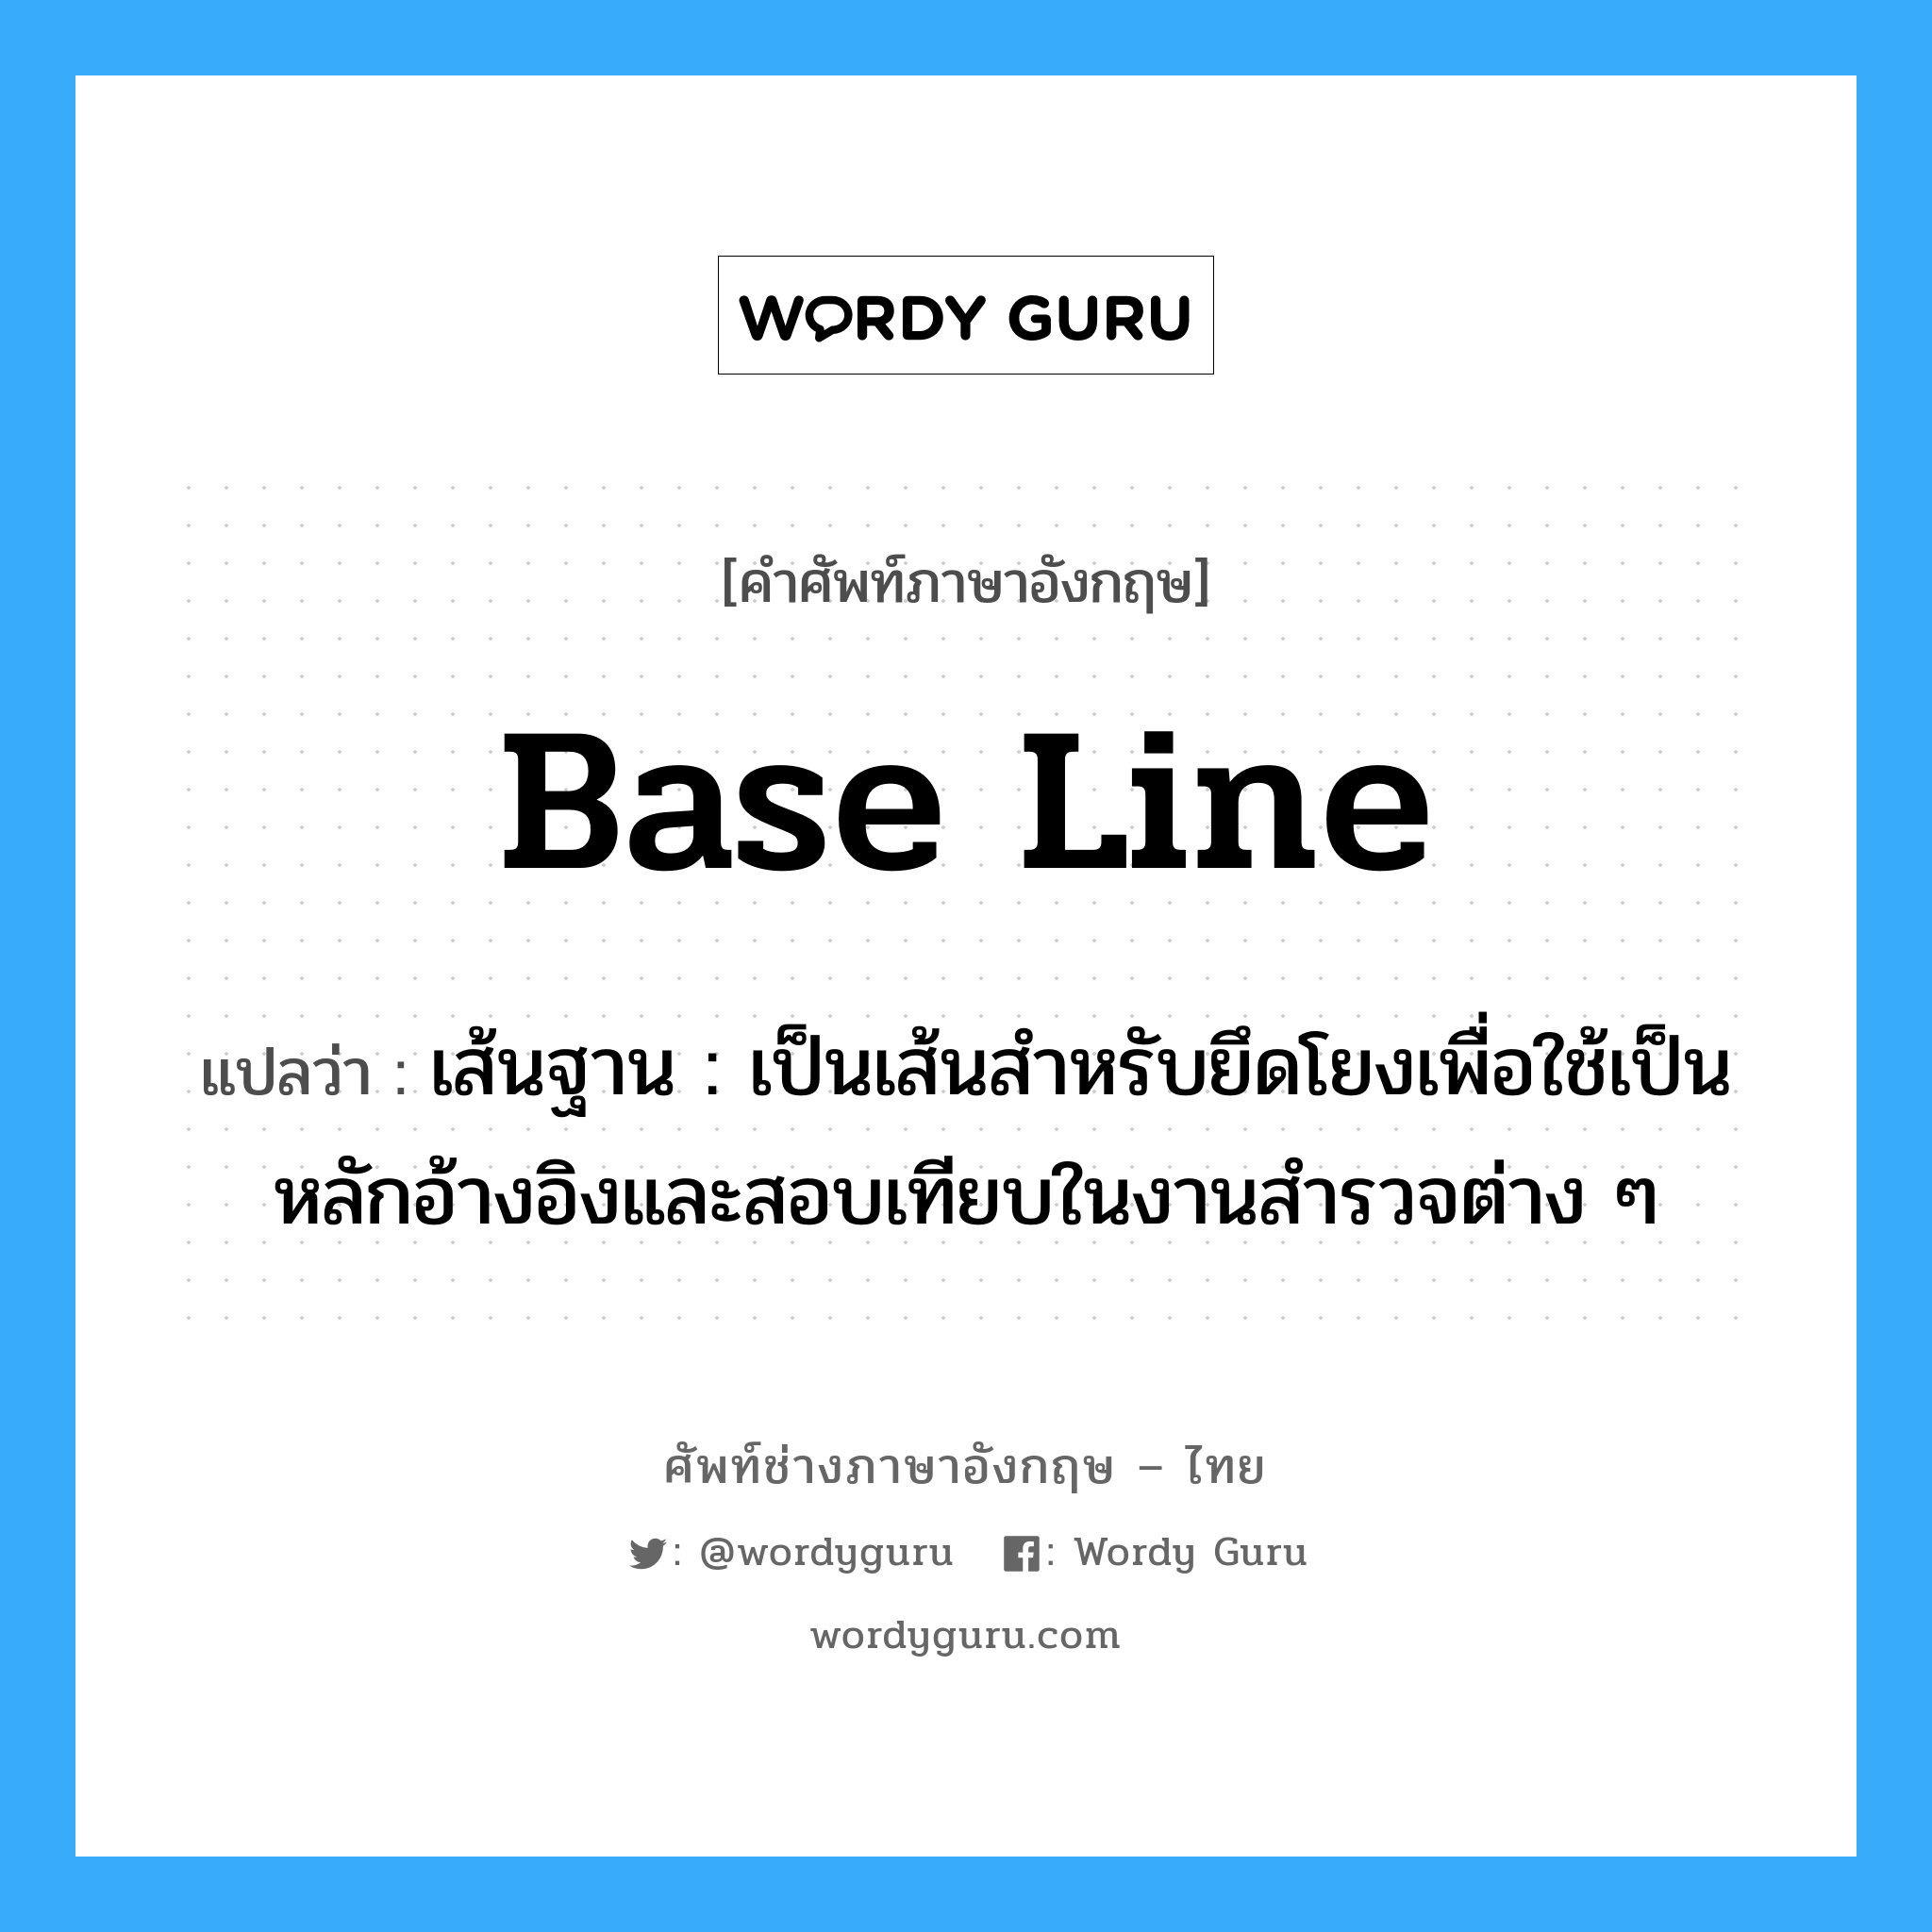 base-line แปลว่า?, คำศัพท์ช่างภาษาอังกฤษ - ไทย base line คำศัพท์ภาษาอังกฤษ base line แปลว่า เส้นฐาน : เป็นเส้นสำหรับยึดโยงเพื่อใช้เป็นหลักอ้างอิงและสอบเทียบในงานสำรวจต่าง ๆ